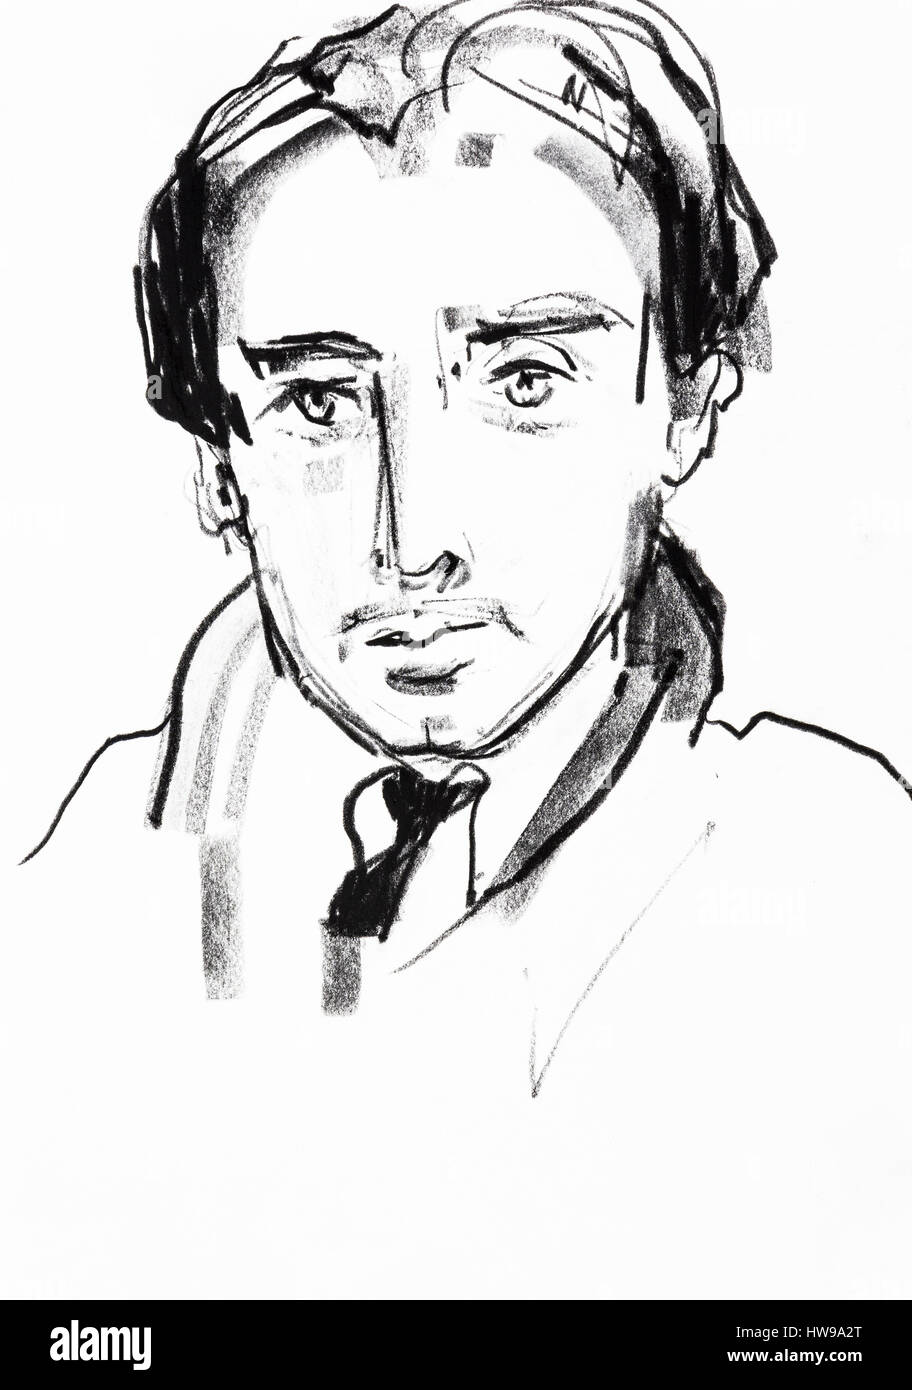 Portrait de Romain Gary (Roman Kacew, 1914-1980), connu aussi sous le nom d'emprunt Emile socchiusa, ecrivain, romancier francais - illustrazione di Ewa KLO Foto Stock